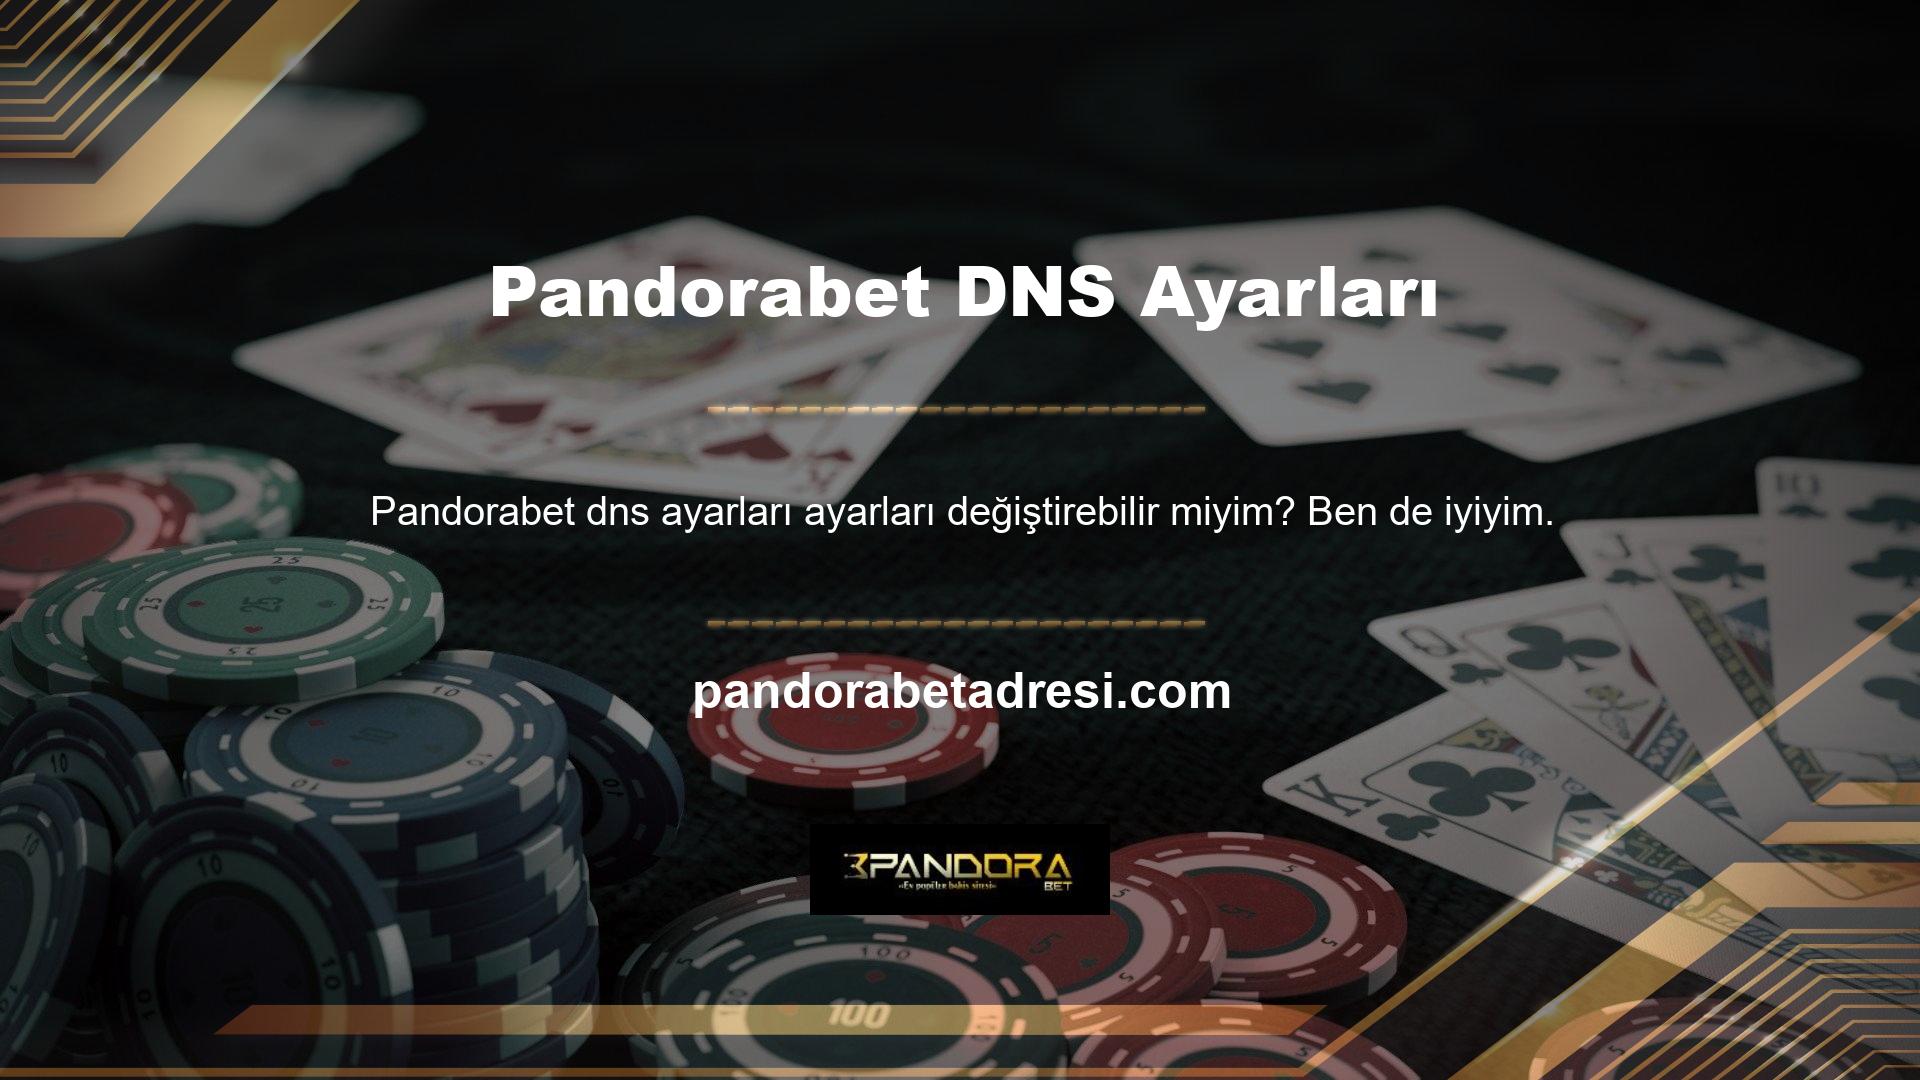 İnternet Bağlantı Merkezi'nden Pandorabet DNS ayarları adresini ve bağlı İnternet adının özelliklerinden o an sahip olduğunuz DNS adresini girerek sistemin ana sayfasını veya web sitesini açabilirsiniz